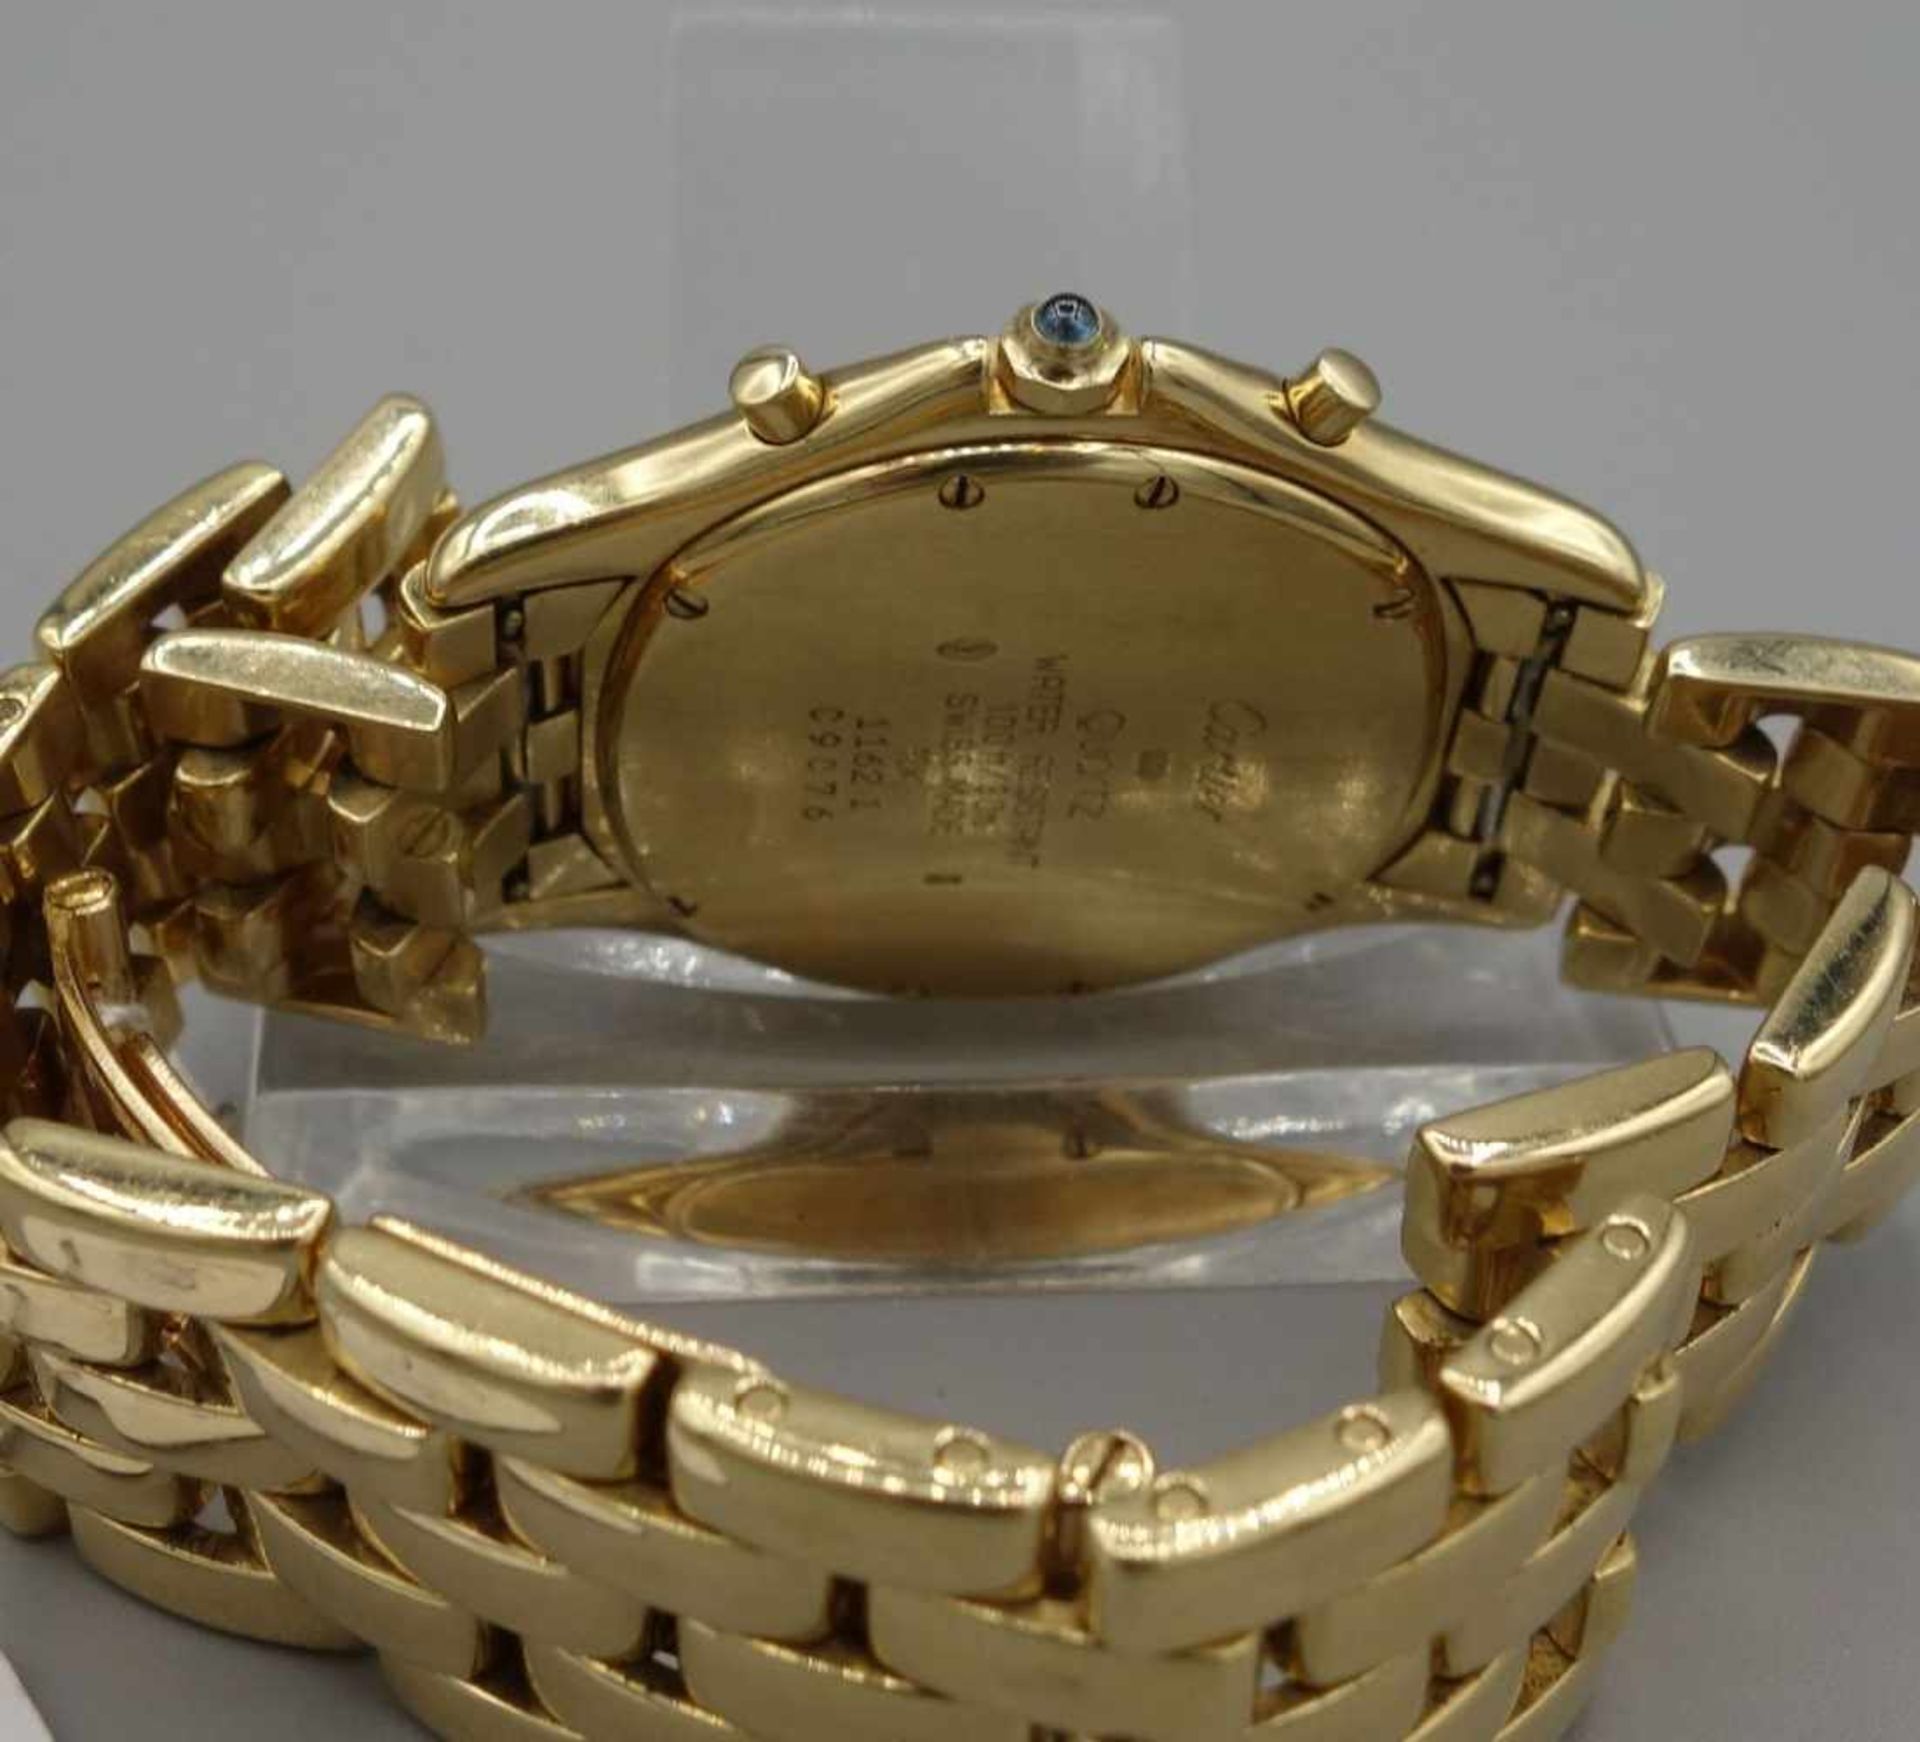 GOLDENE ARMBANDUHR / CHRONOGRAPH - CARTIER COUGAR / wristwatch, Quarz-Uhr, Manufaktur Cartier SA / - Bild 6 aus 7